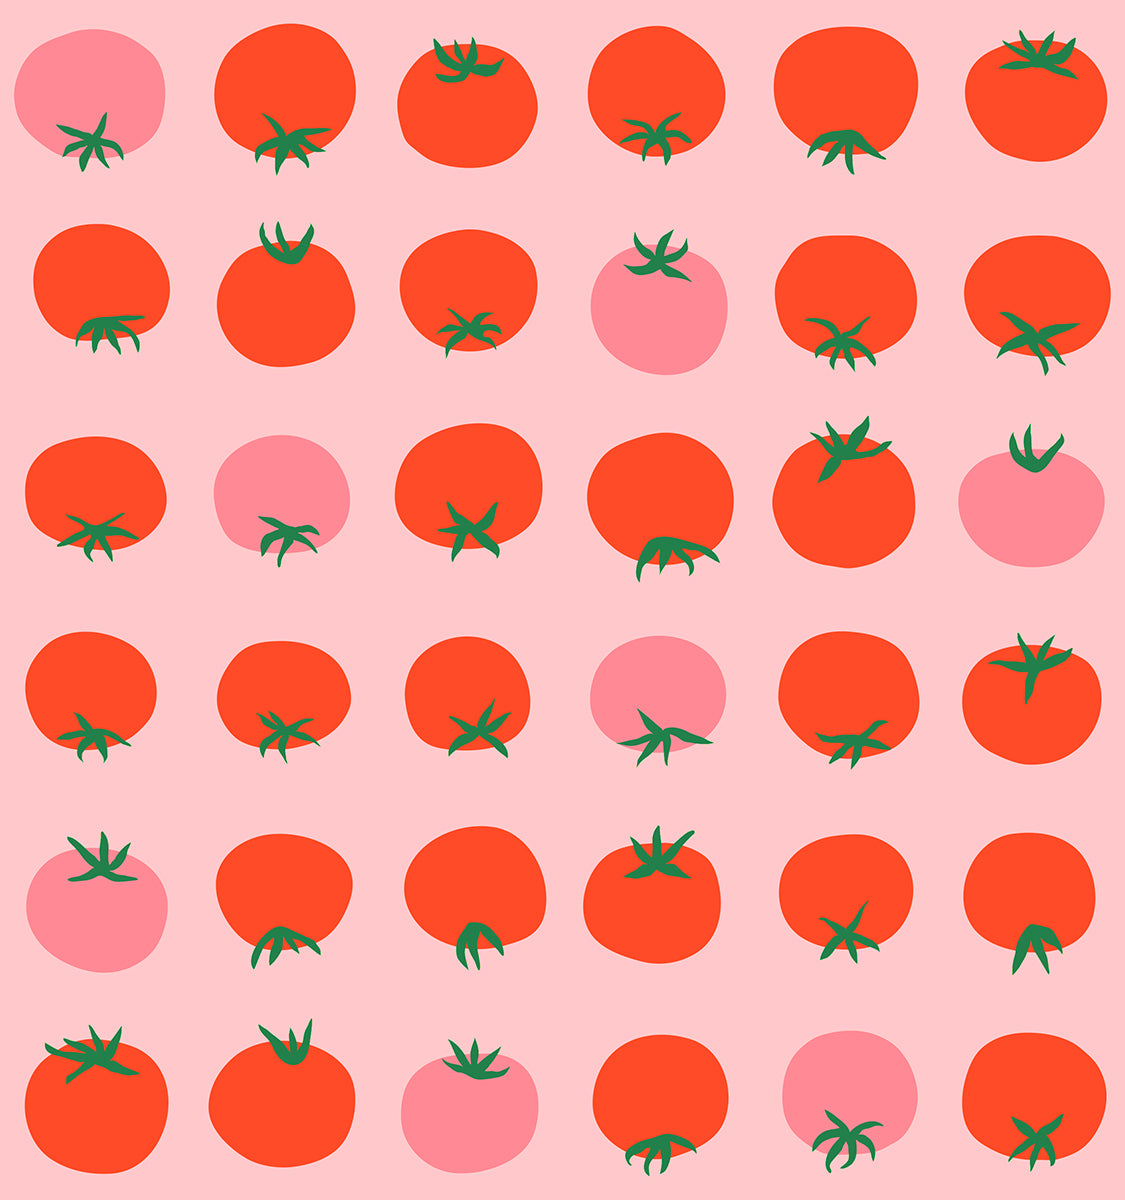 Ruby Star Society – Tomato Tomahto